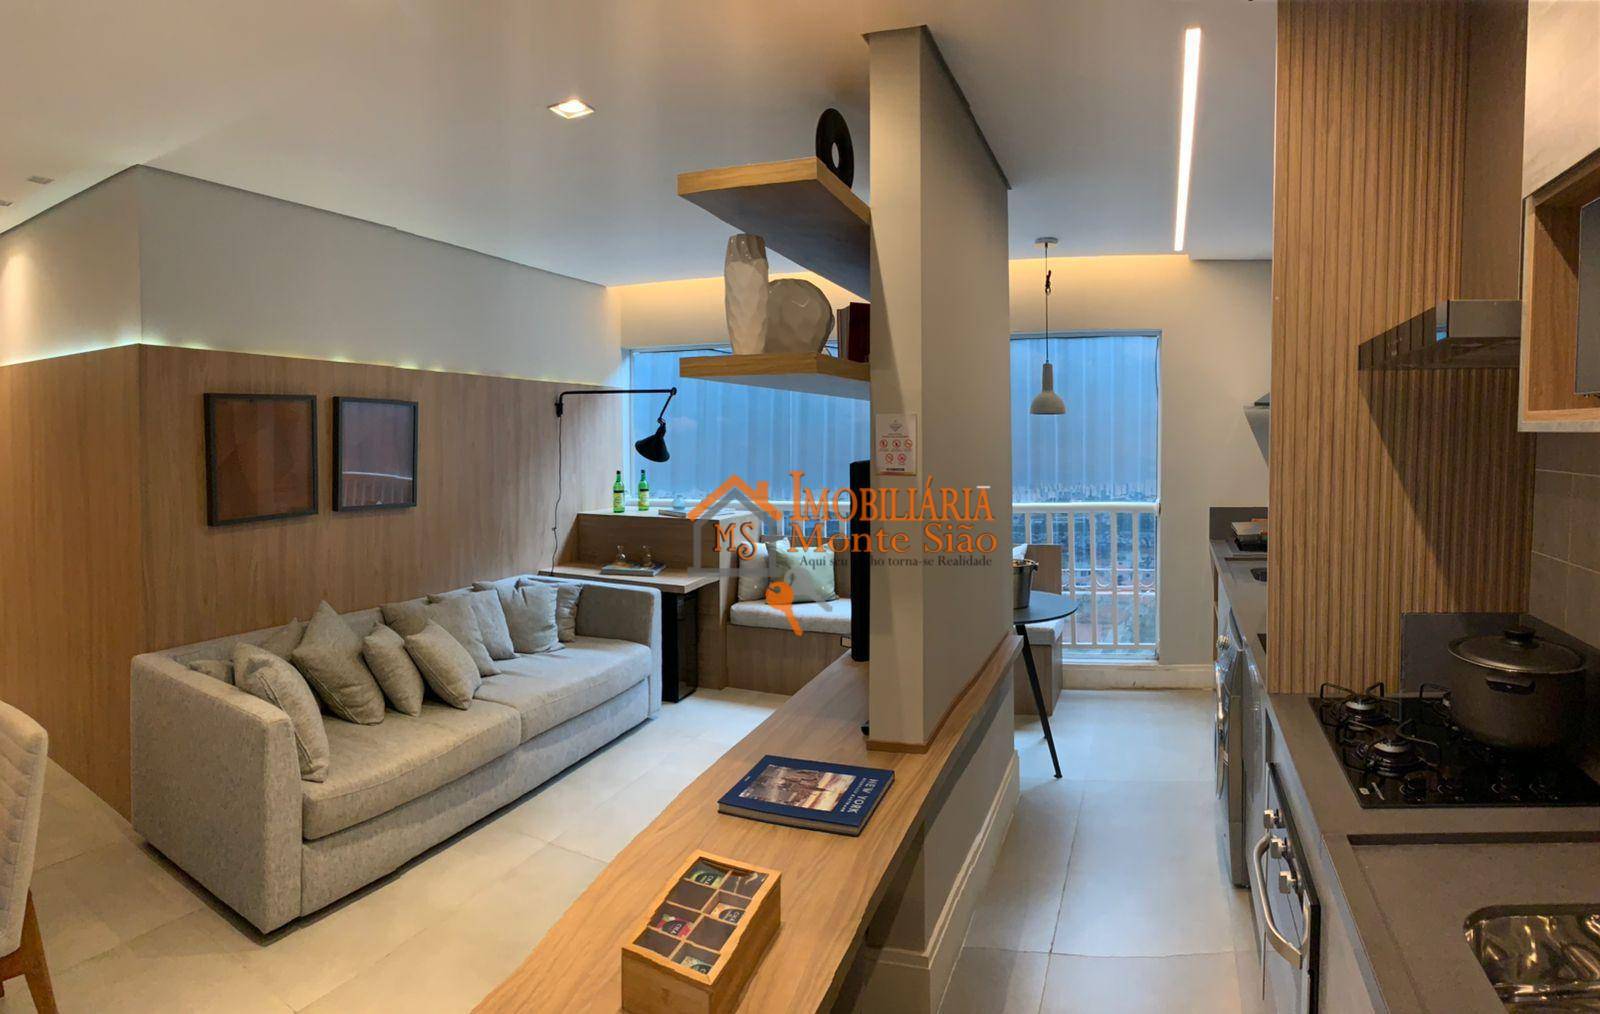 Apartamento com 3 dormitórios à venda, 75 m² por R$ 610.000,00 - Ponte Grande - Guarulhos/SP